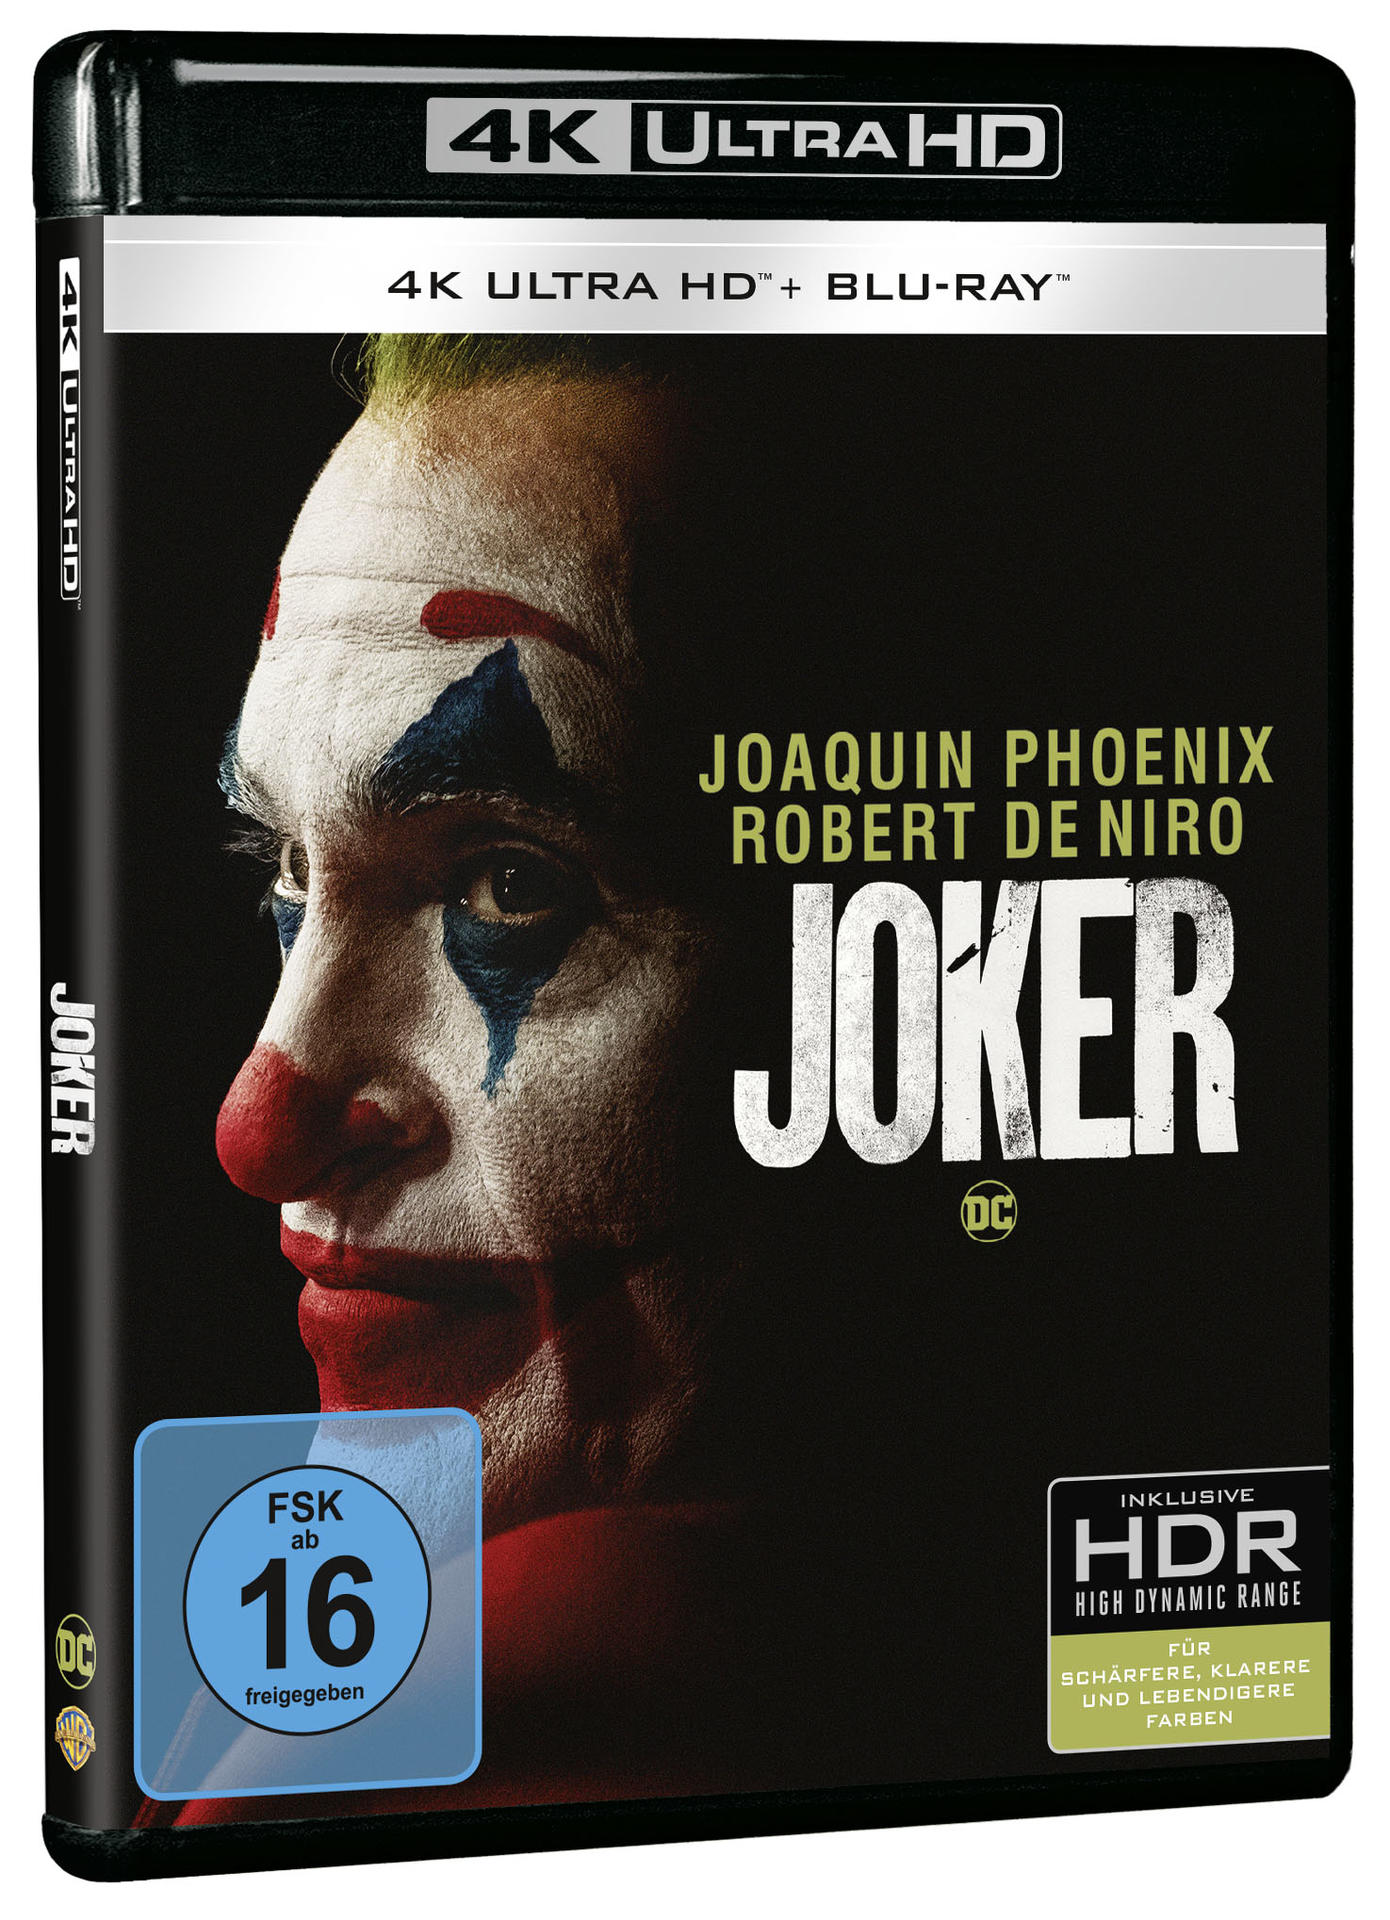 4K Joker + Blu-ray Blu-ray HD Ultra